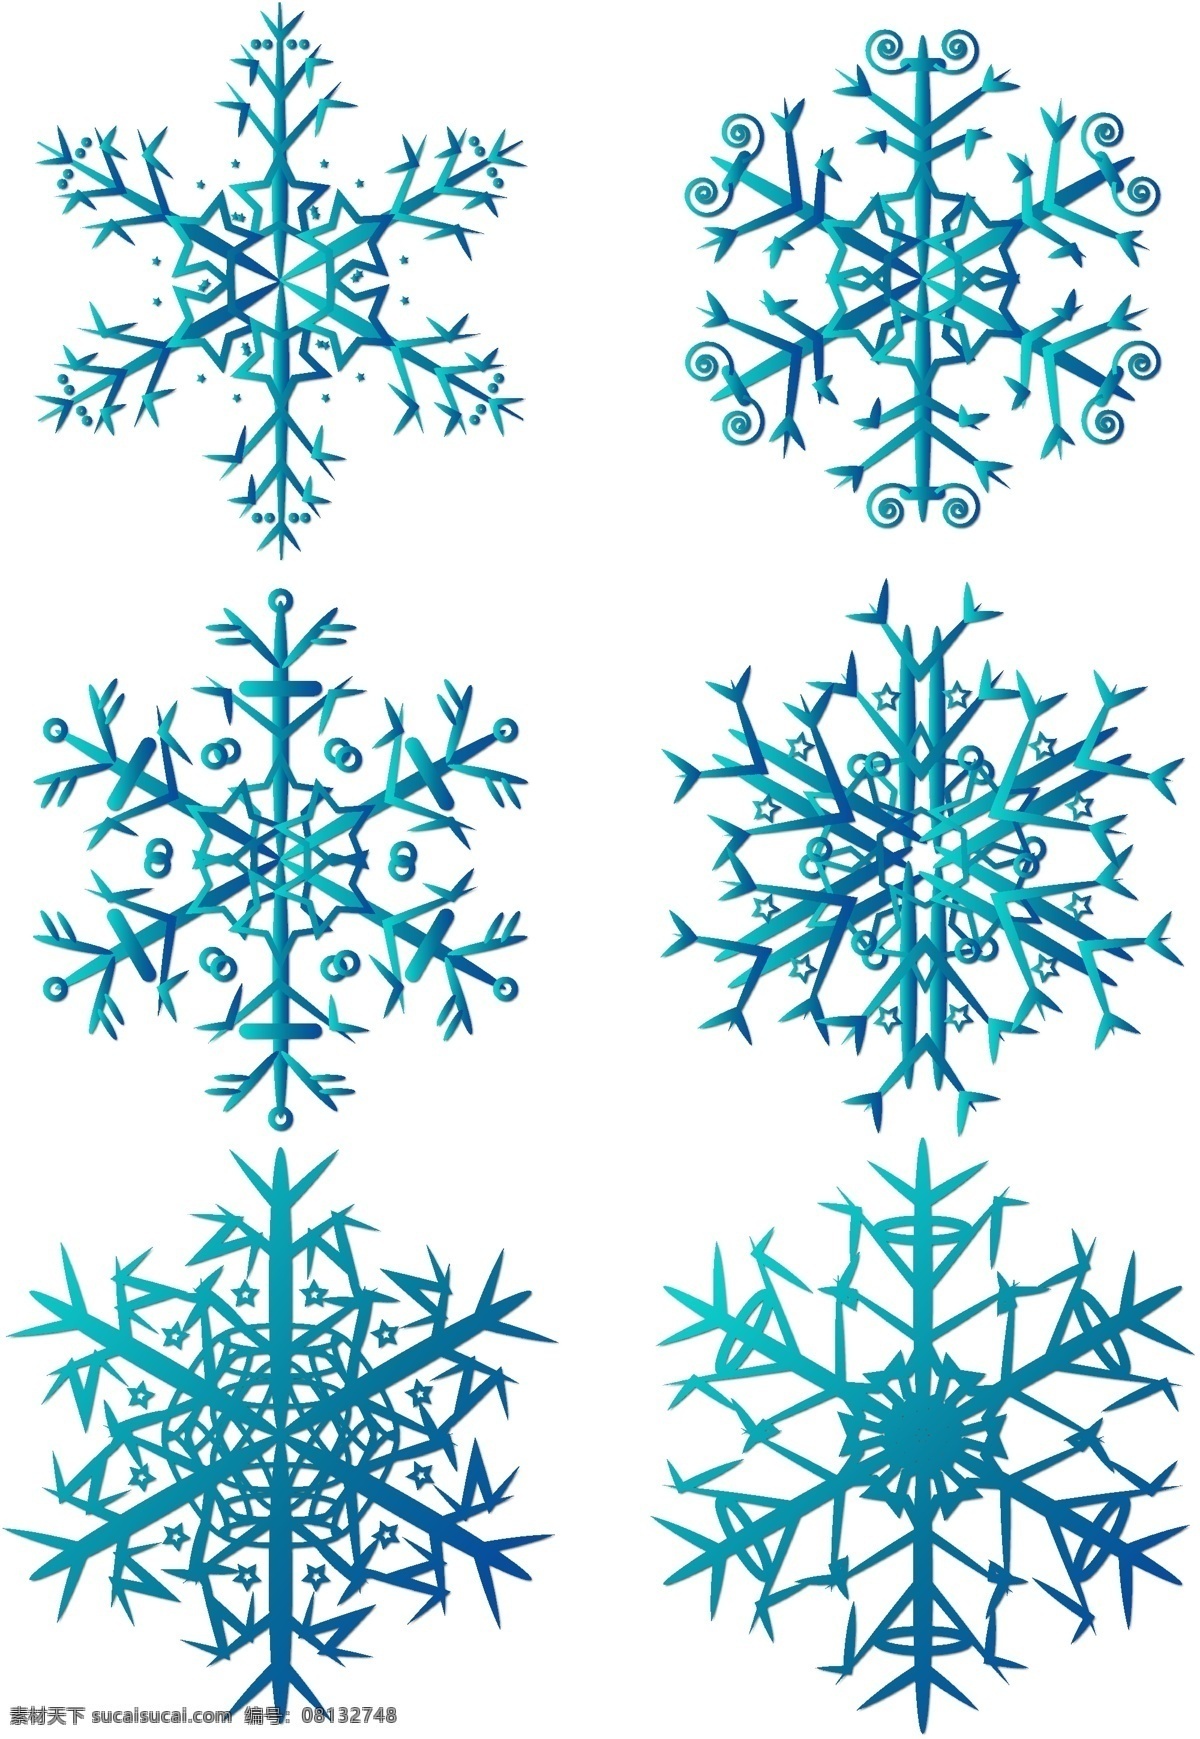 圣诞节 蓝色 雪花 元素 商用 圣诞雪花 冬季雪花 蓝色雪花 雪花元素 简约雪花